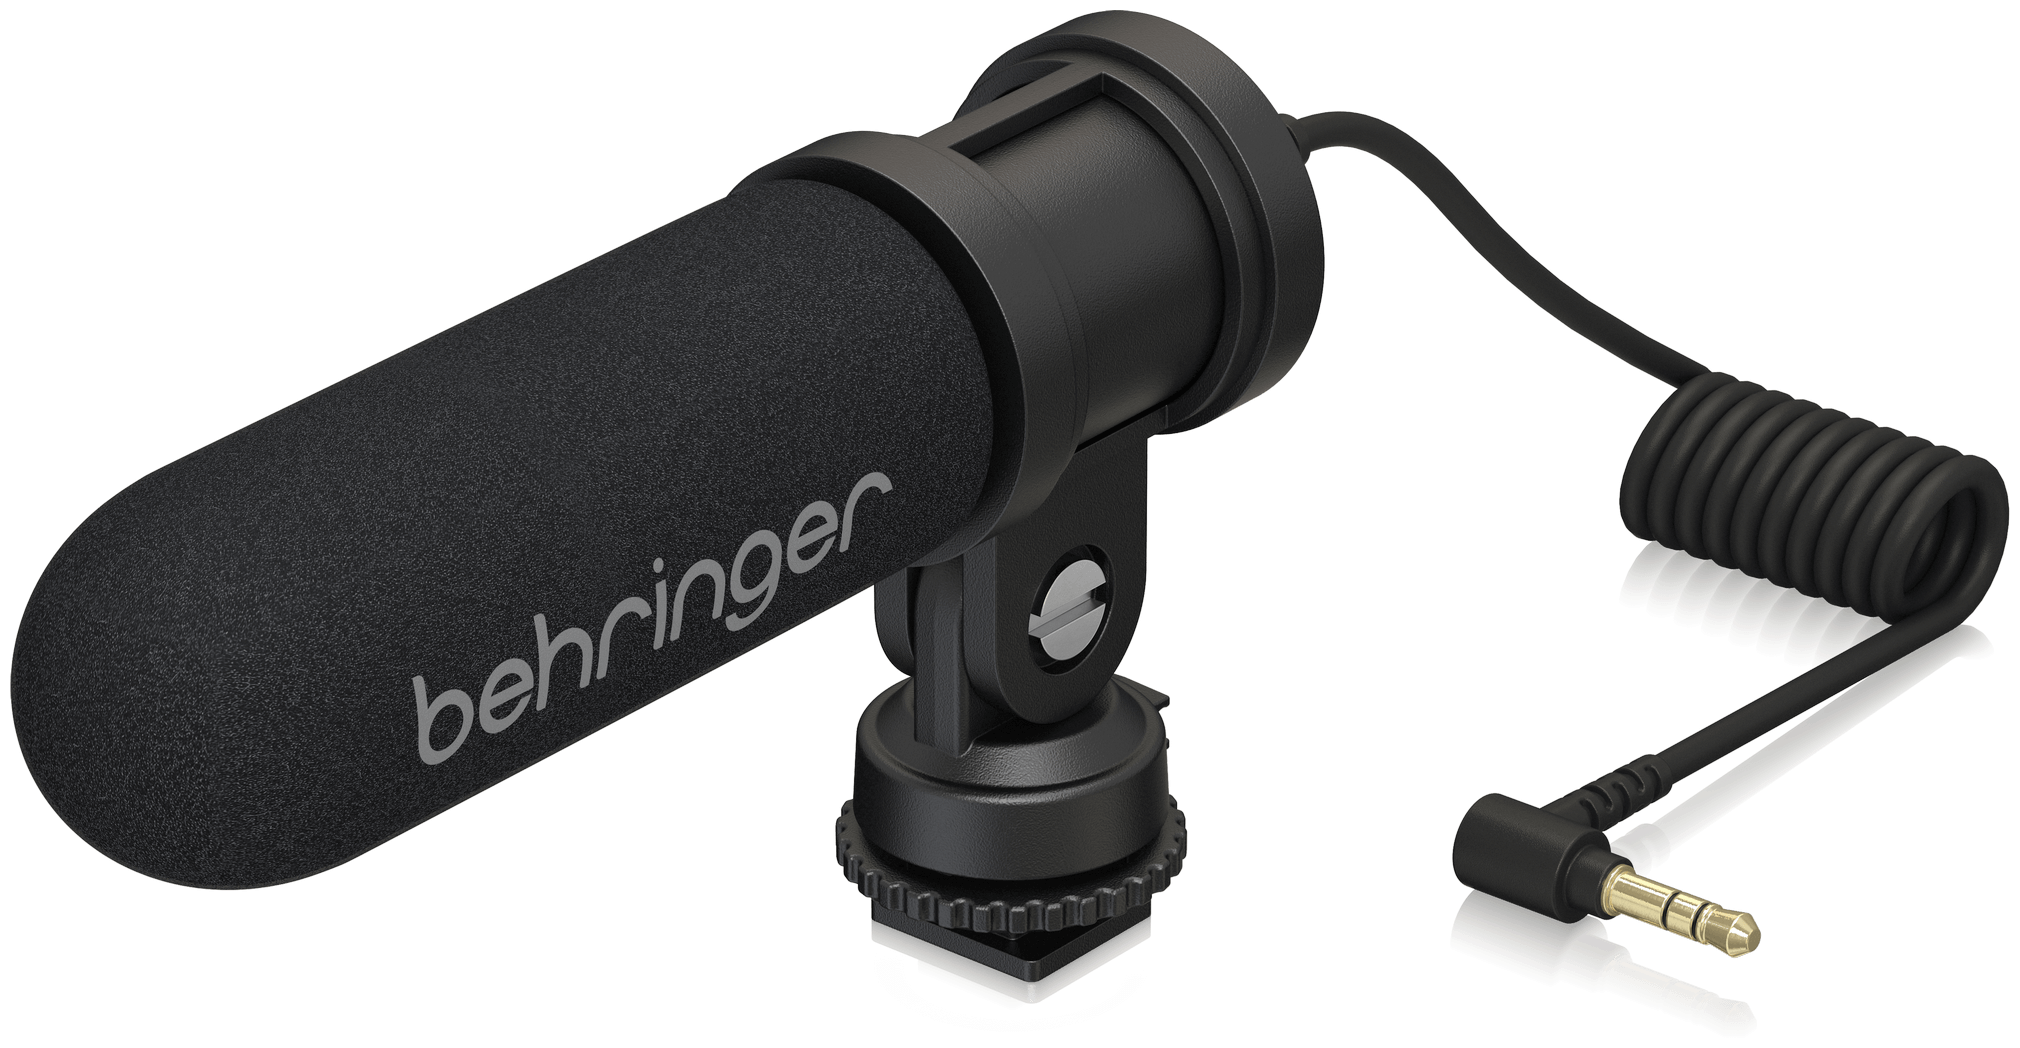 Behringer VIDEO MIC MS накамерный конденсаторный микрофон, двойной капсюль, переключаемый угол 90/120, со съемным держателем и башмаком,разъем 3,5 TRS